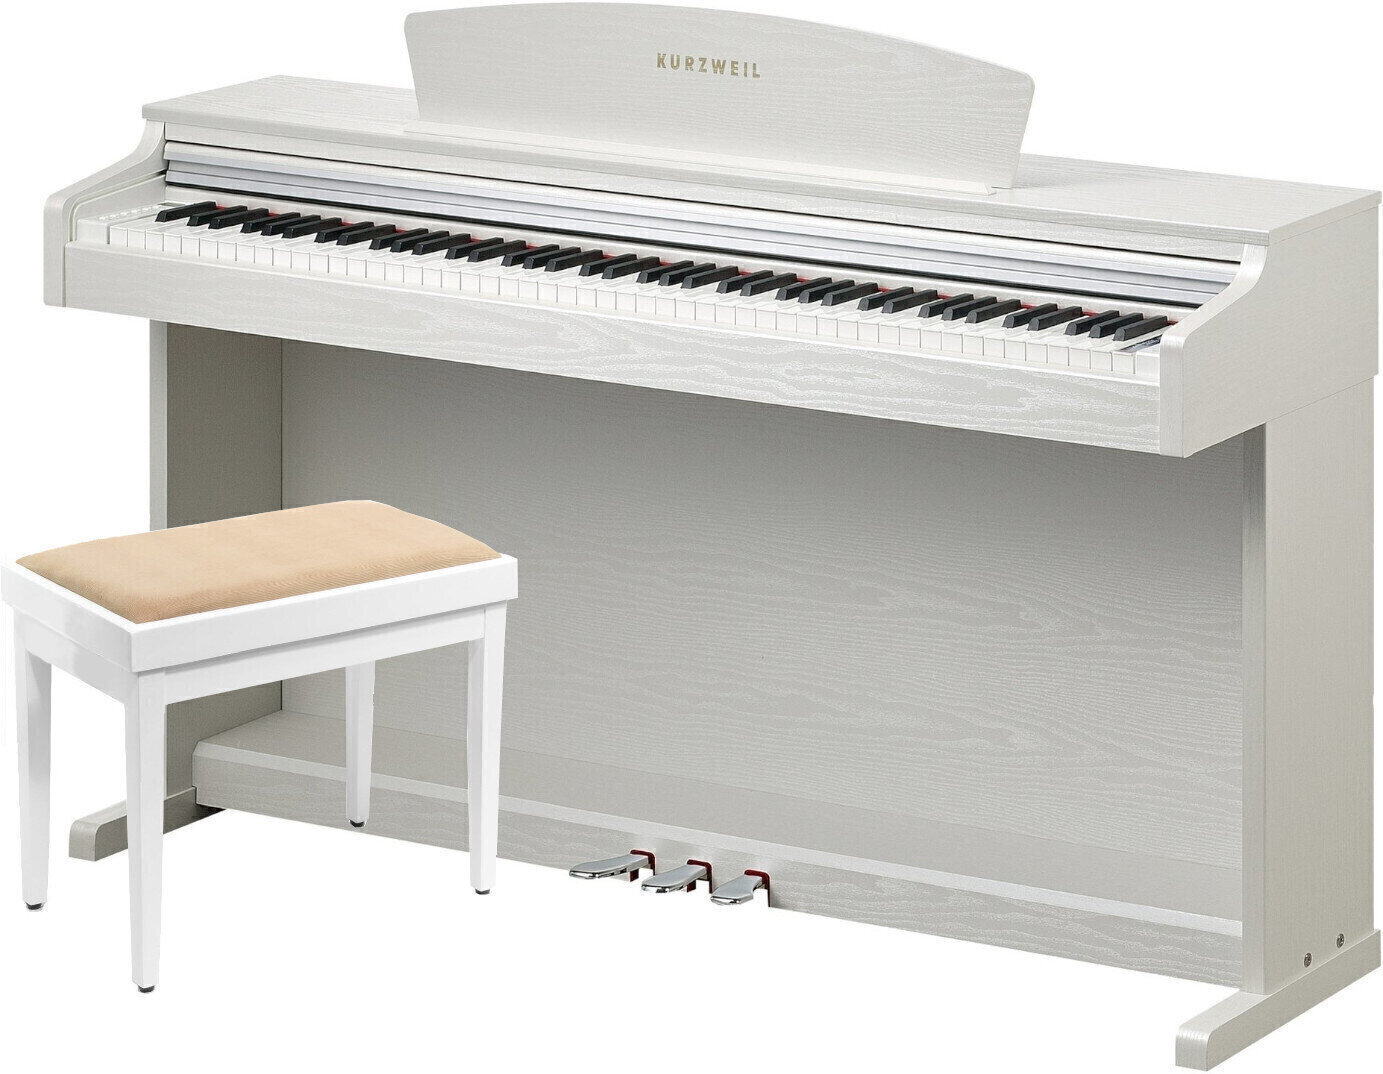 Ψηφιακό Πιάνο Kurzweil M110A Λευκό Ψηφιακό Πιάνο